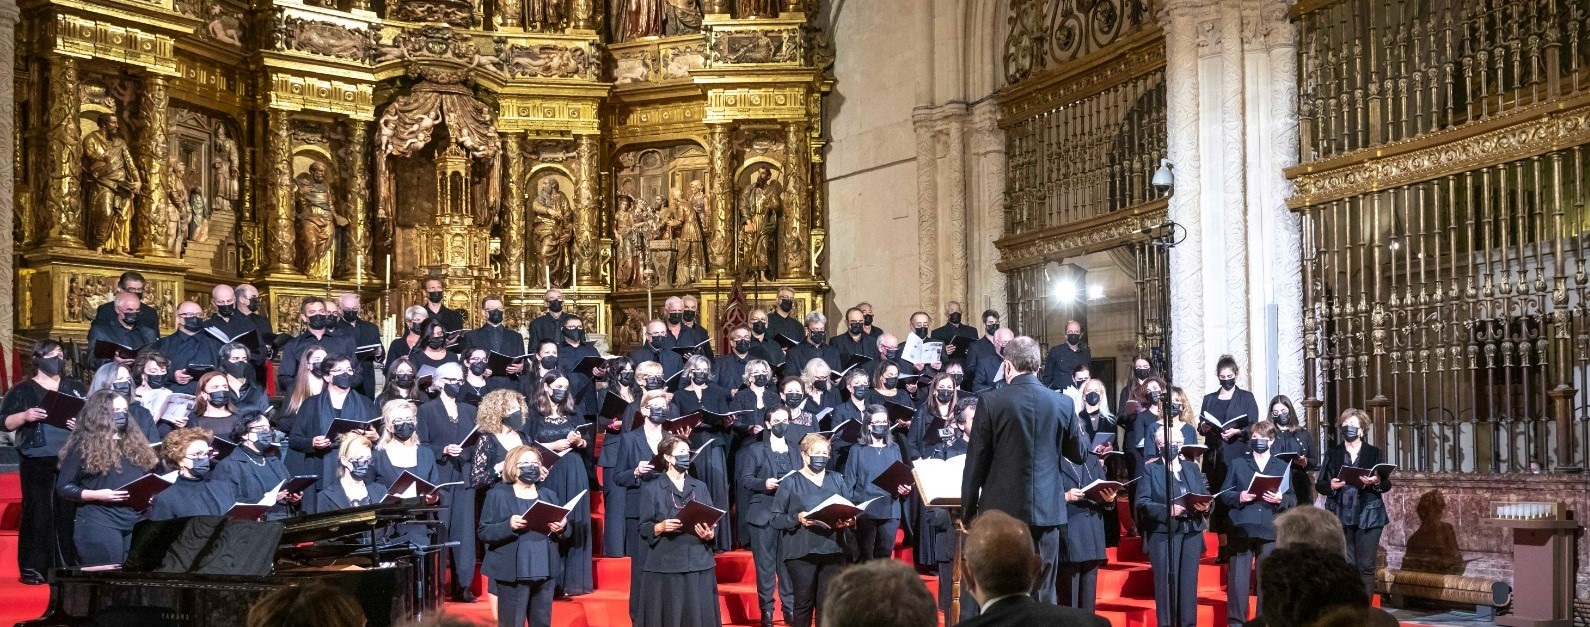 Coro Musicalberca en la Catedral de Burgos